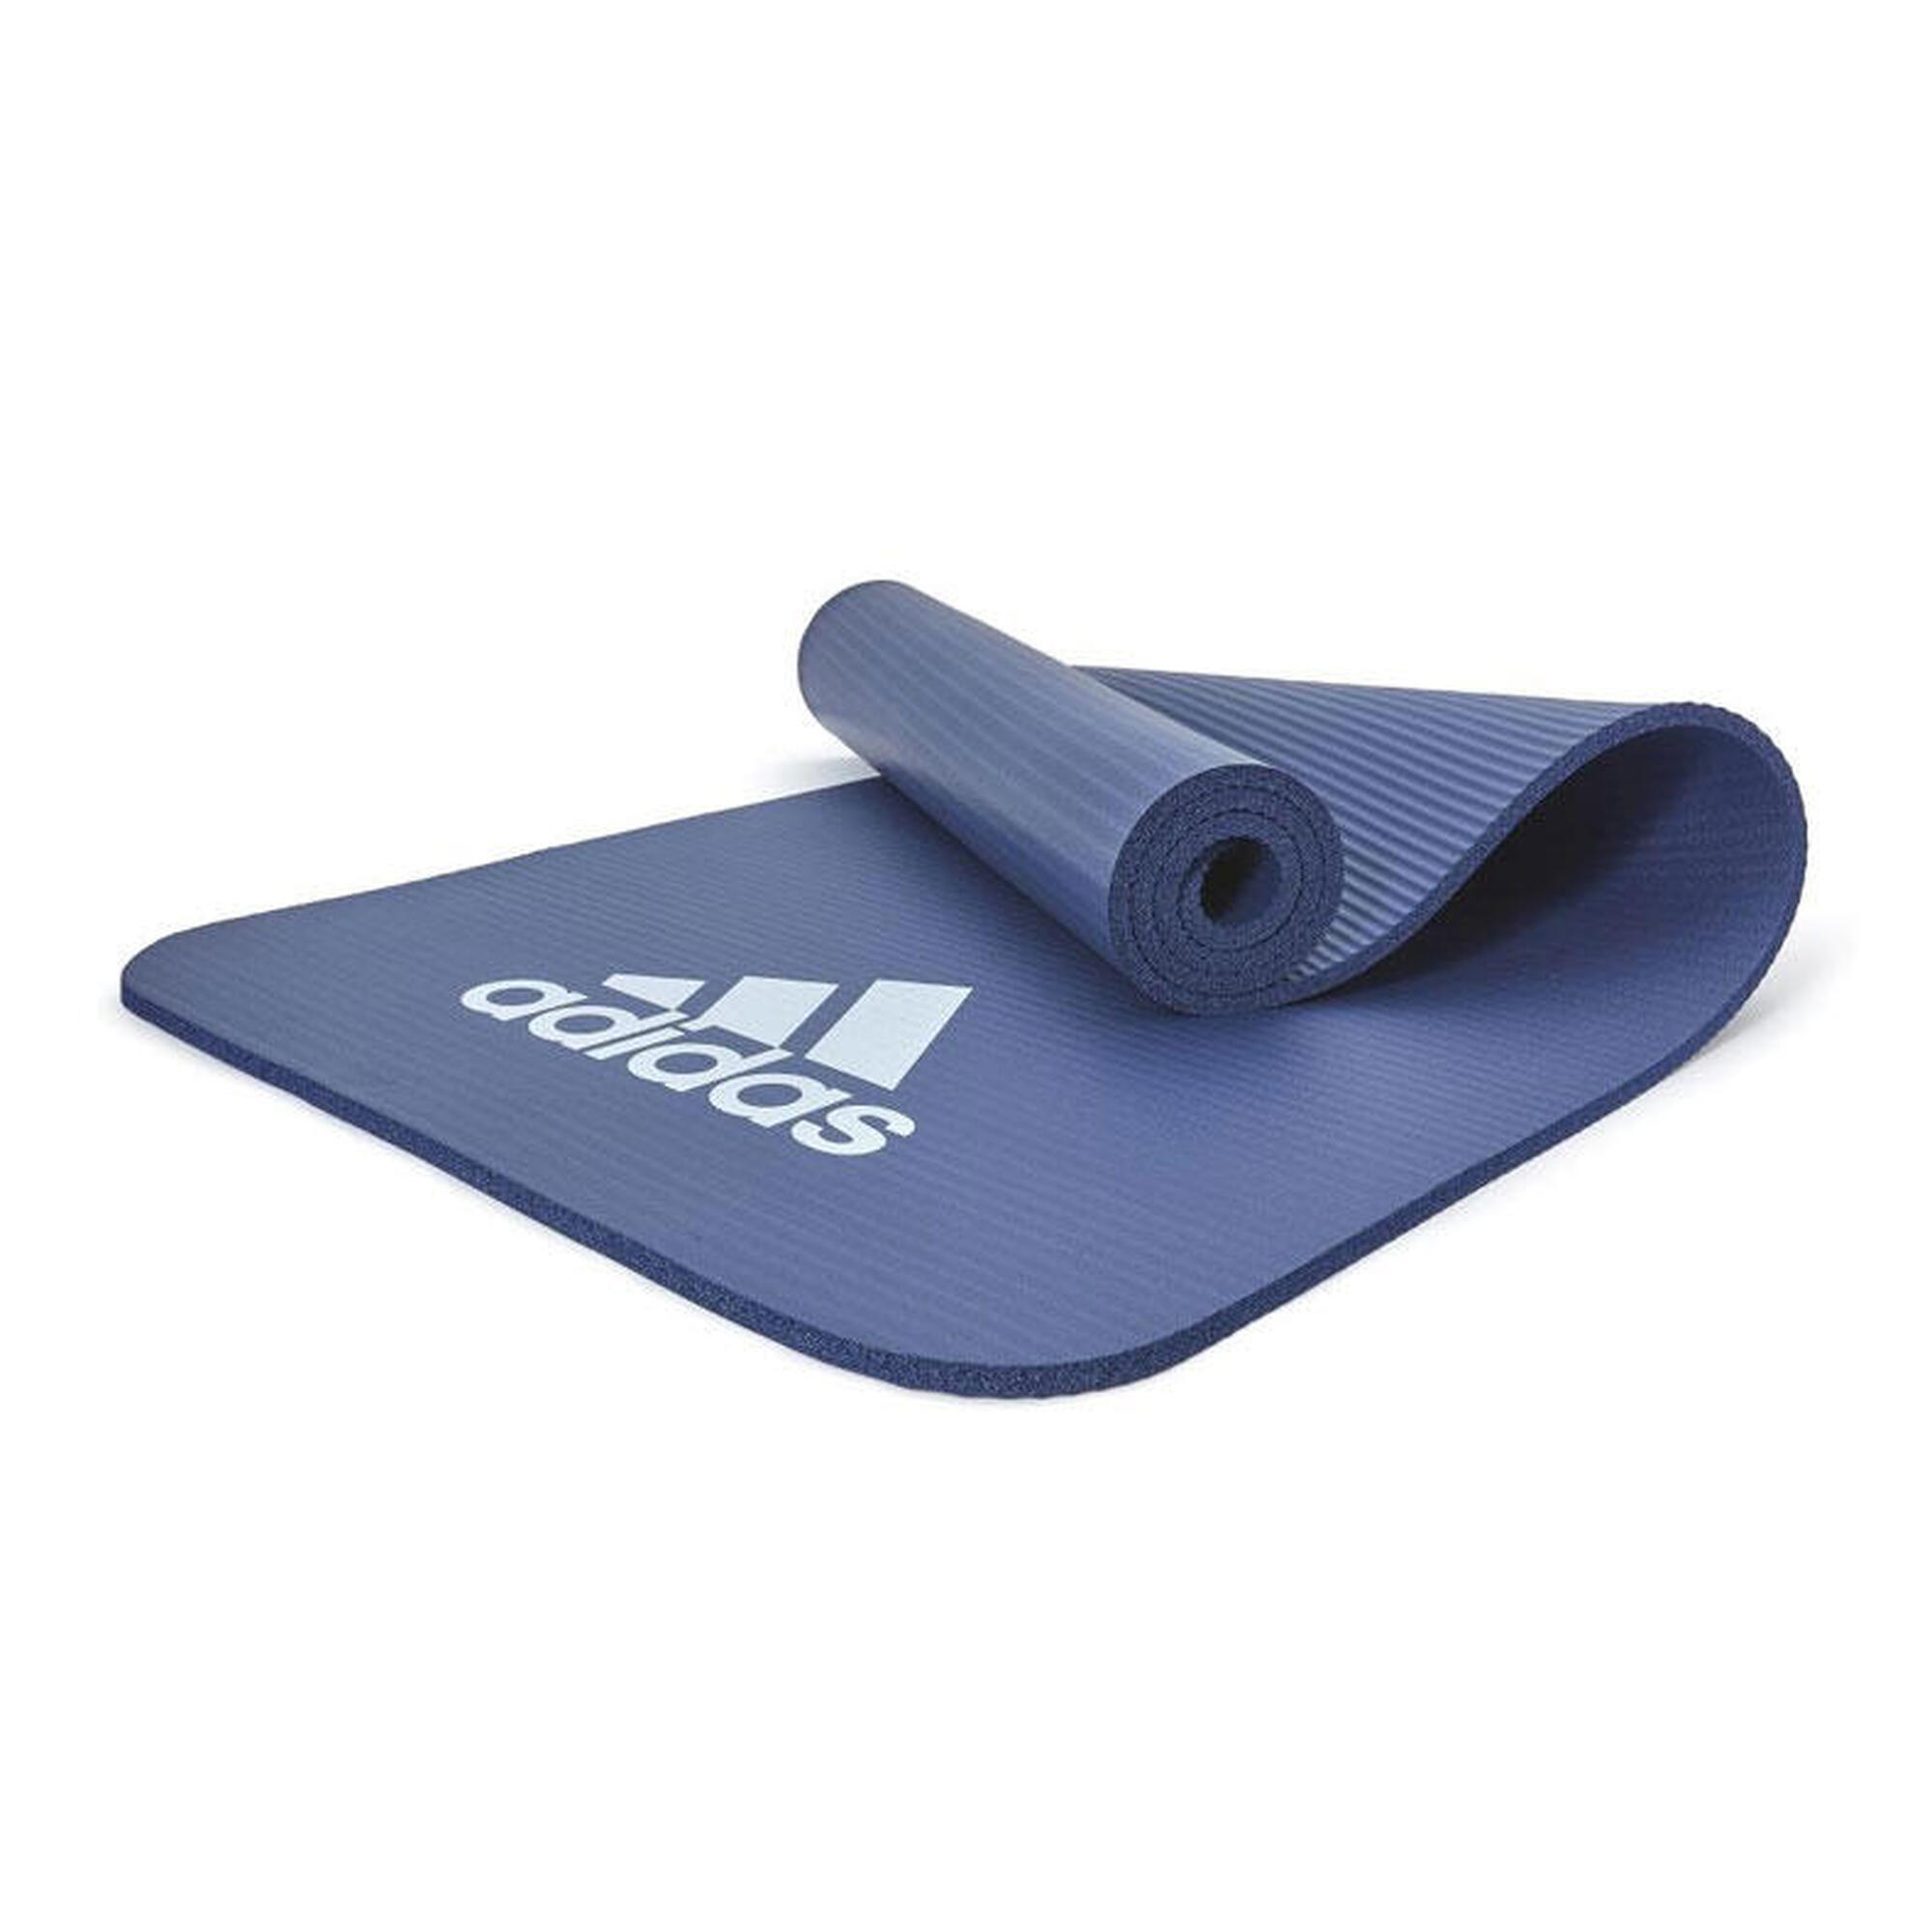 Adidas Fitnessmatte - 10mm - Blau